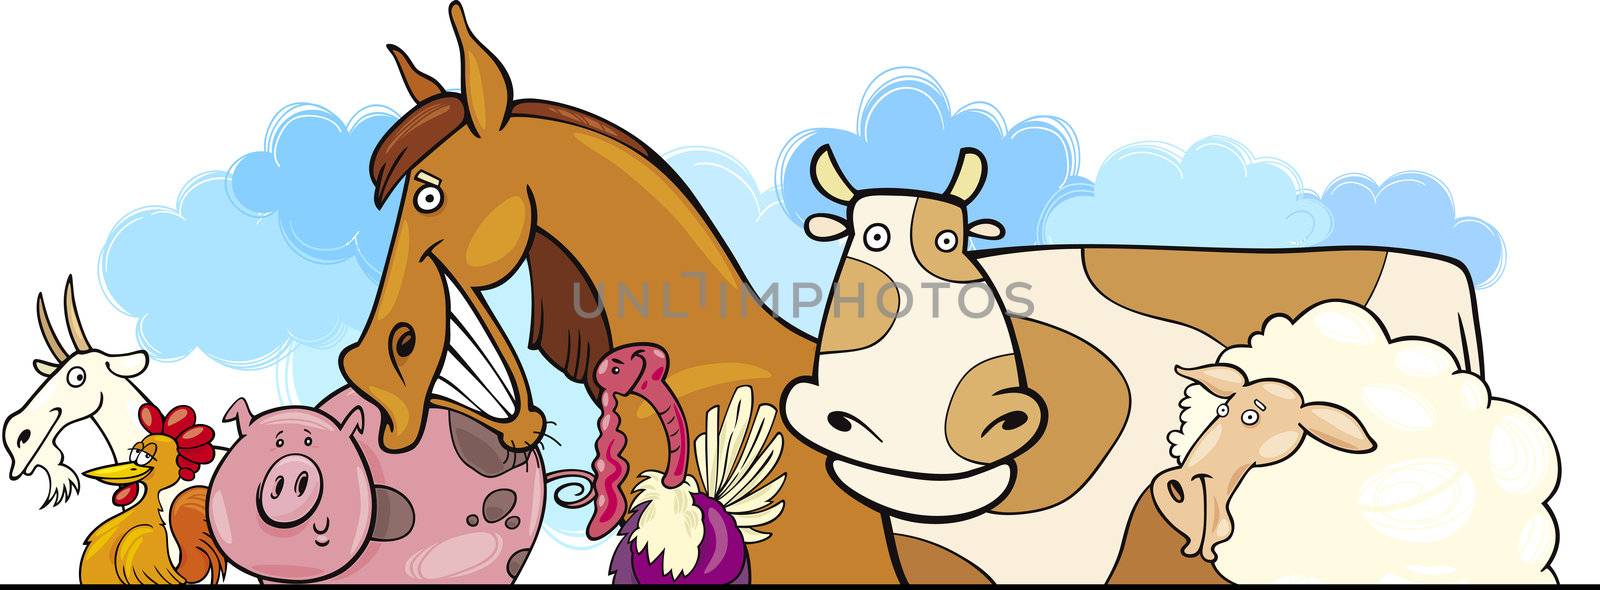 Cartoon Farm animals design by izakowski